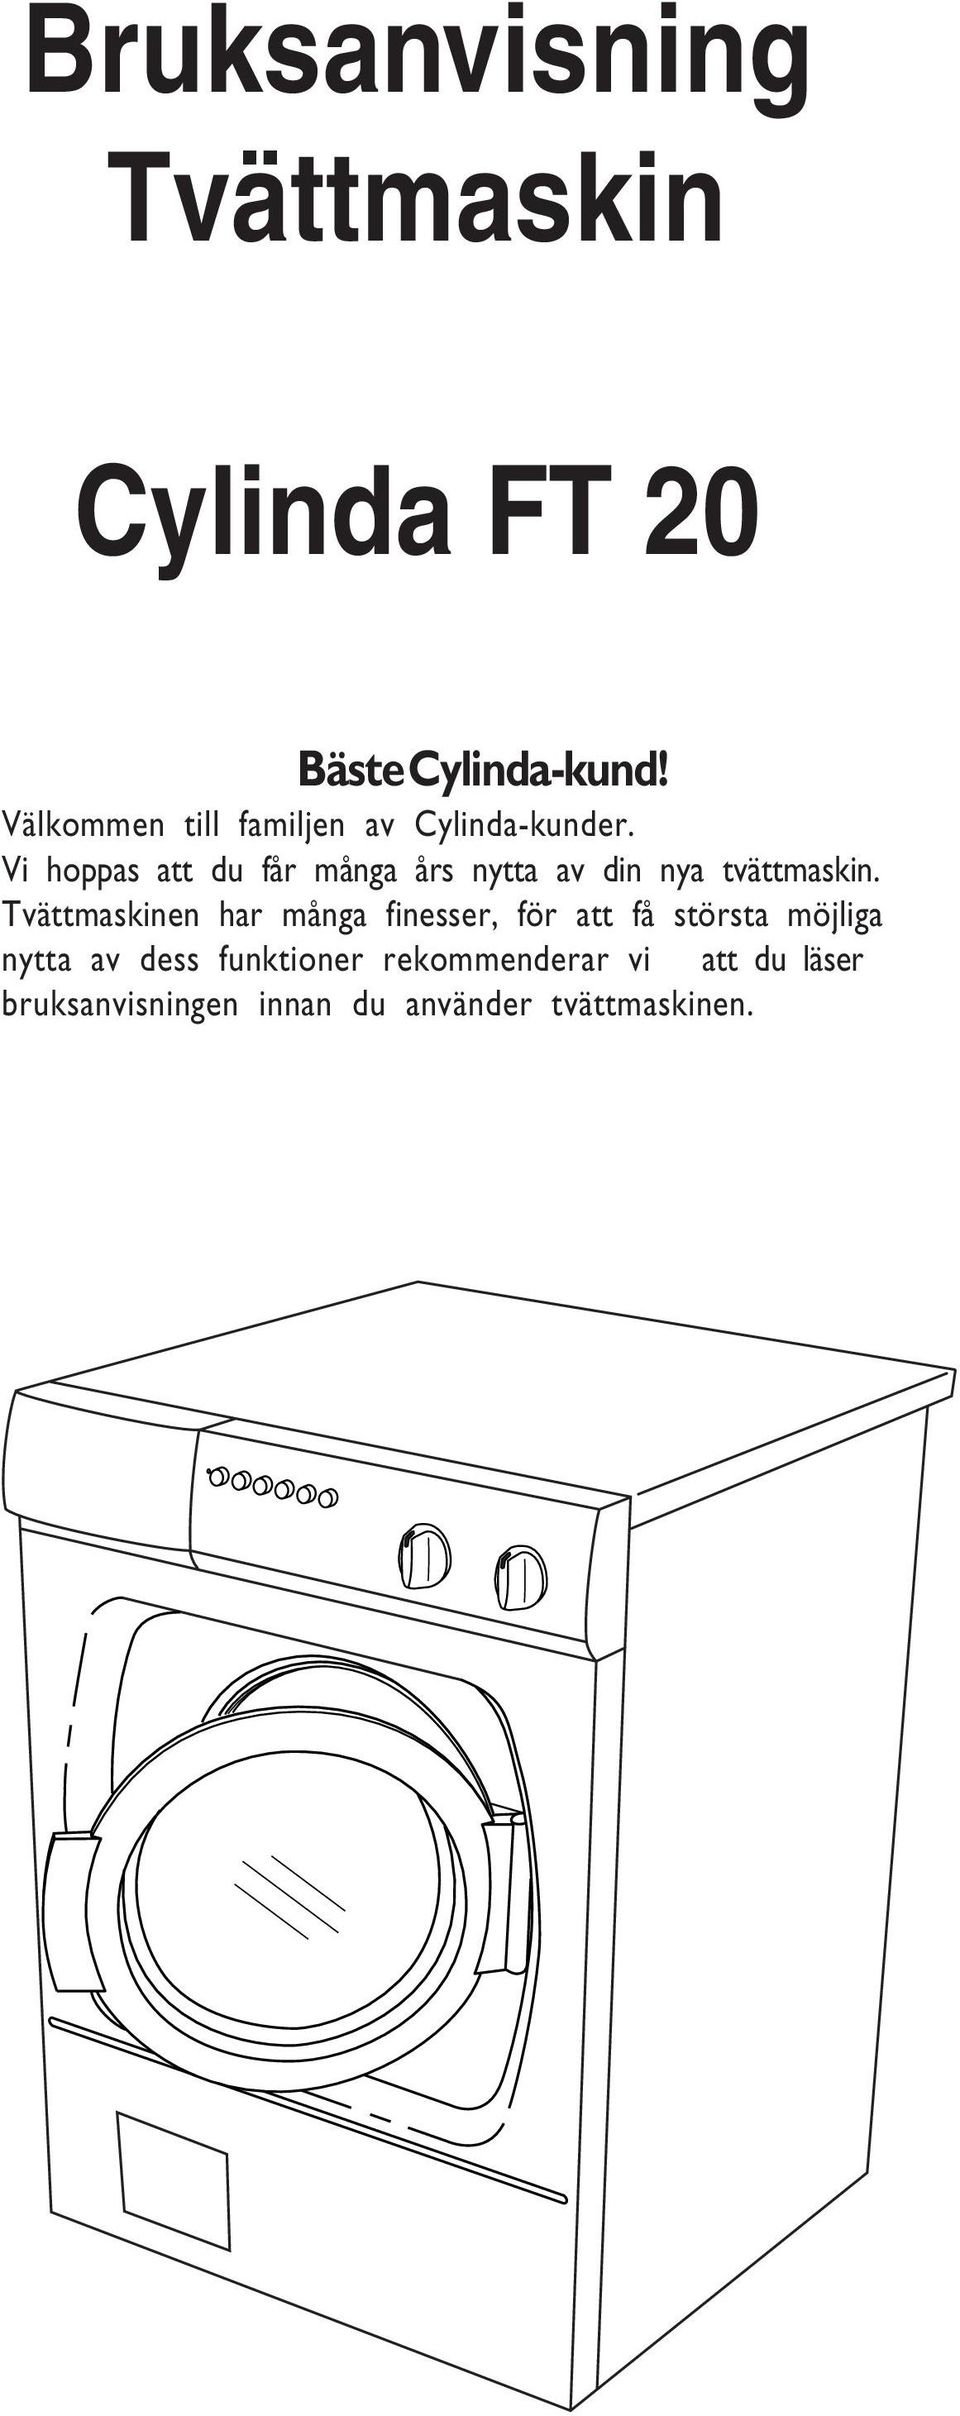 Bruksanvisning Tvättmaskin. Cylinda FT 20 - PDF Gratis nedladdning